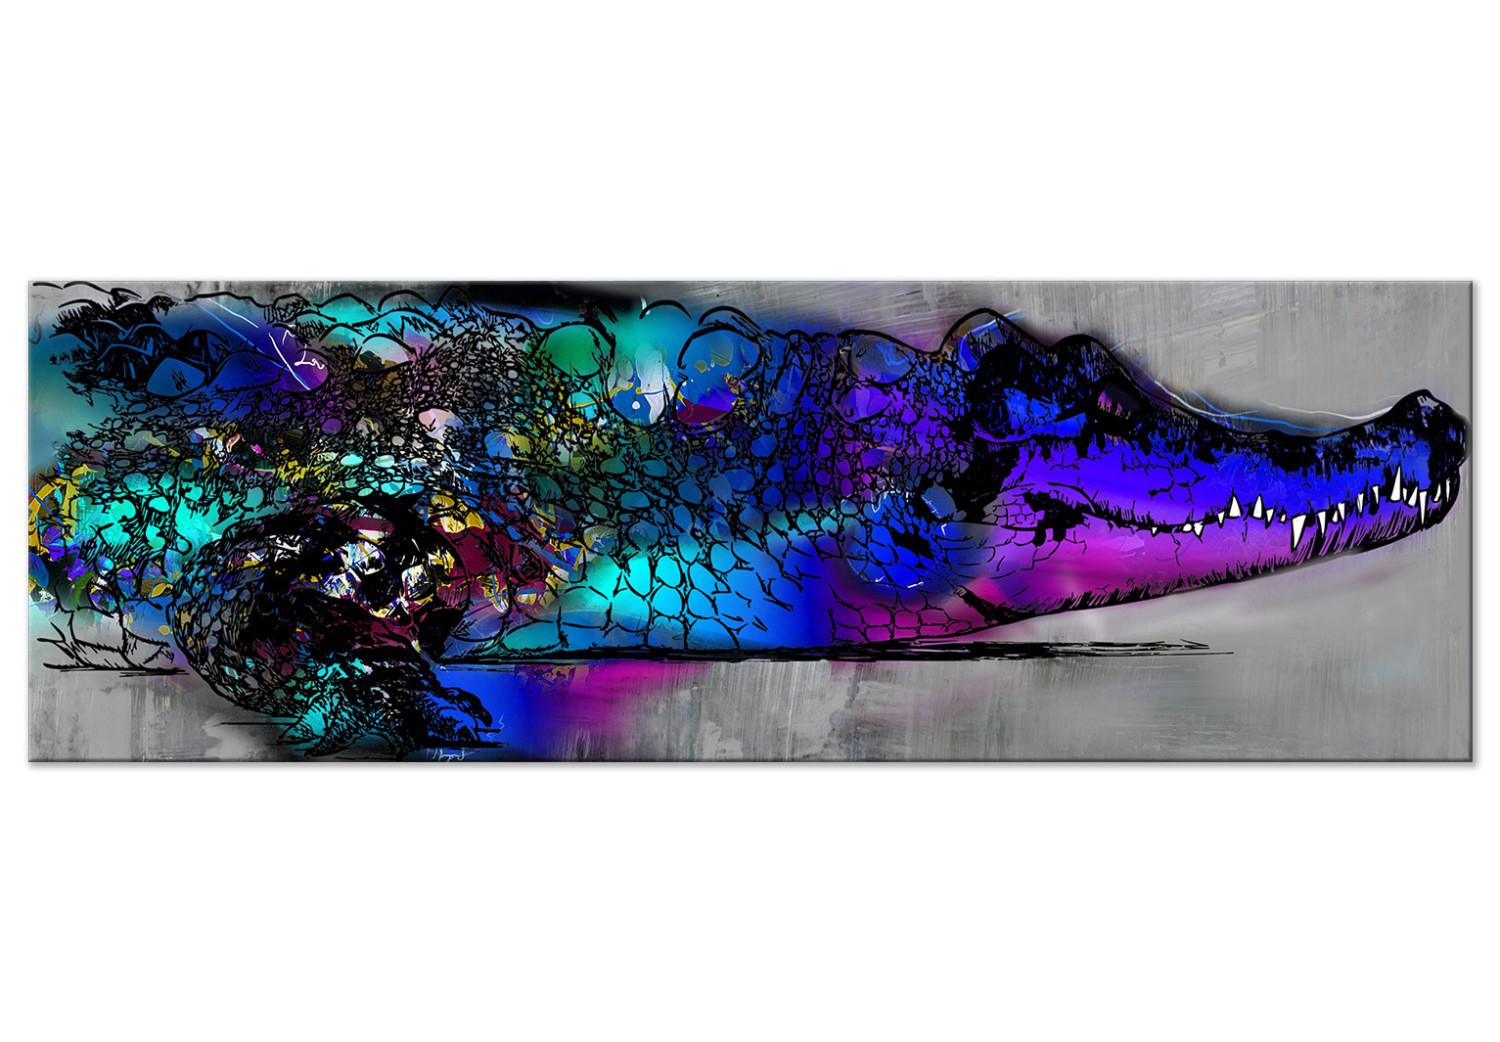 Cuadro decorativo Mi amigo el caimán (1-pieza) estrecho - colorido animal fluvial